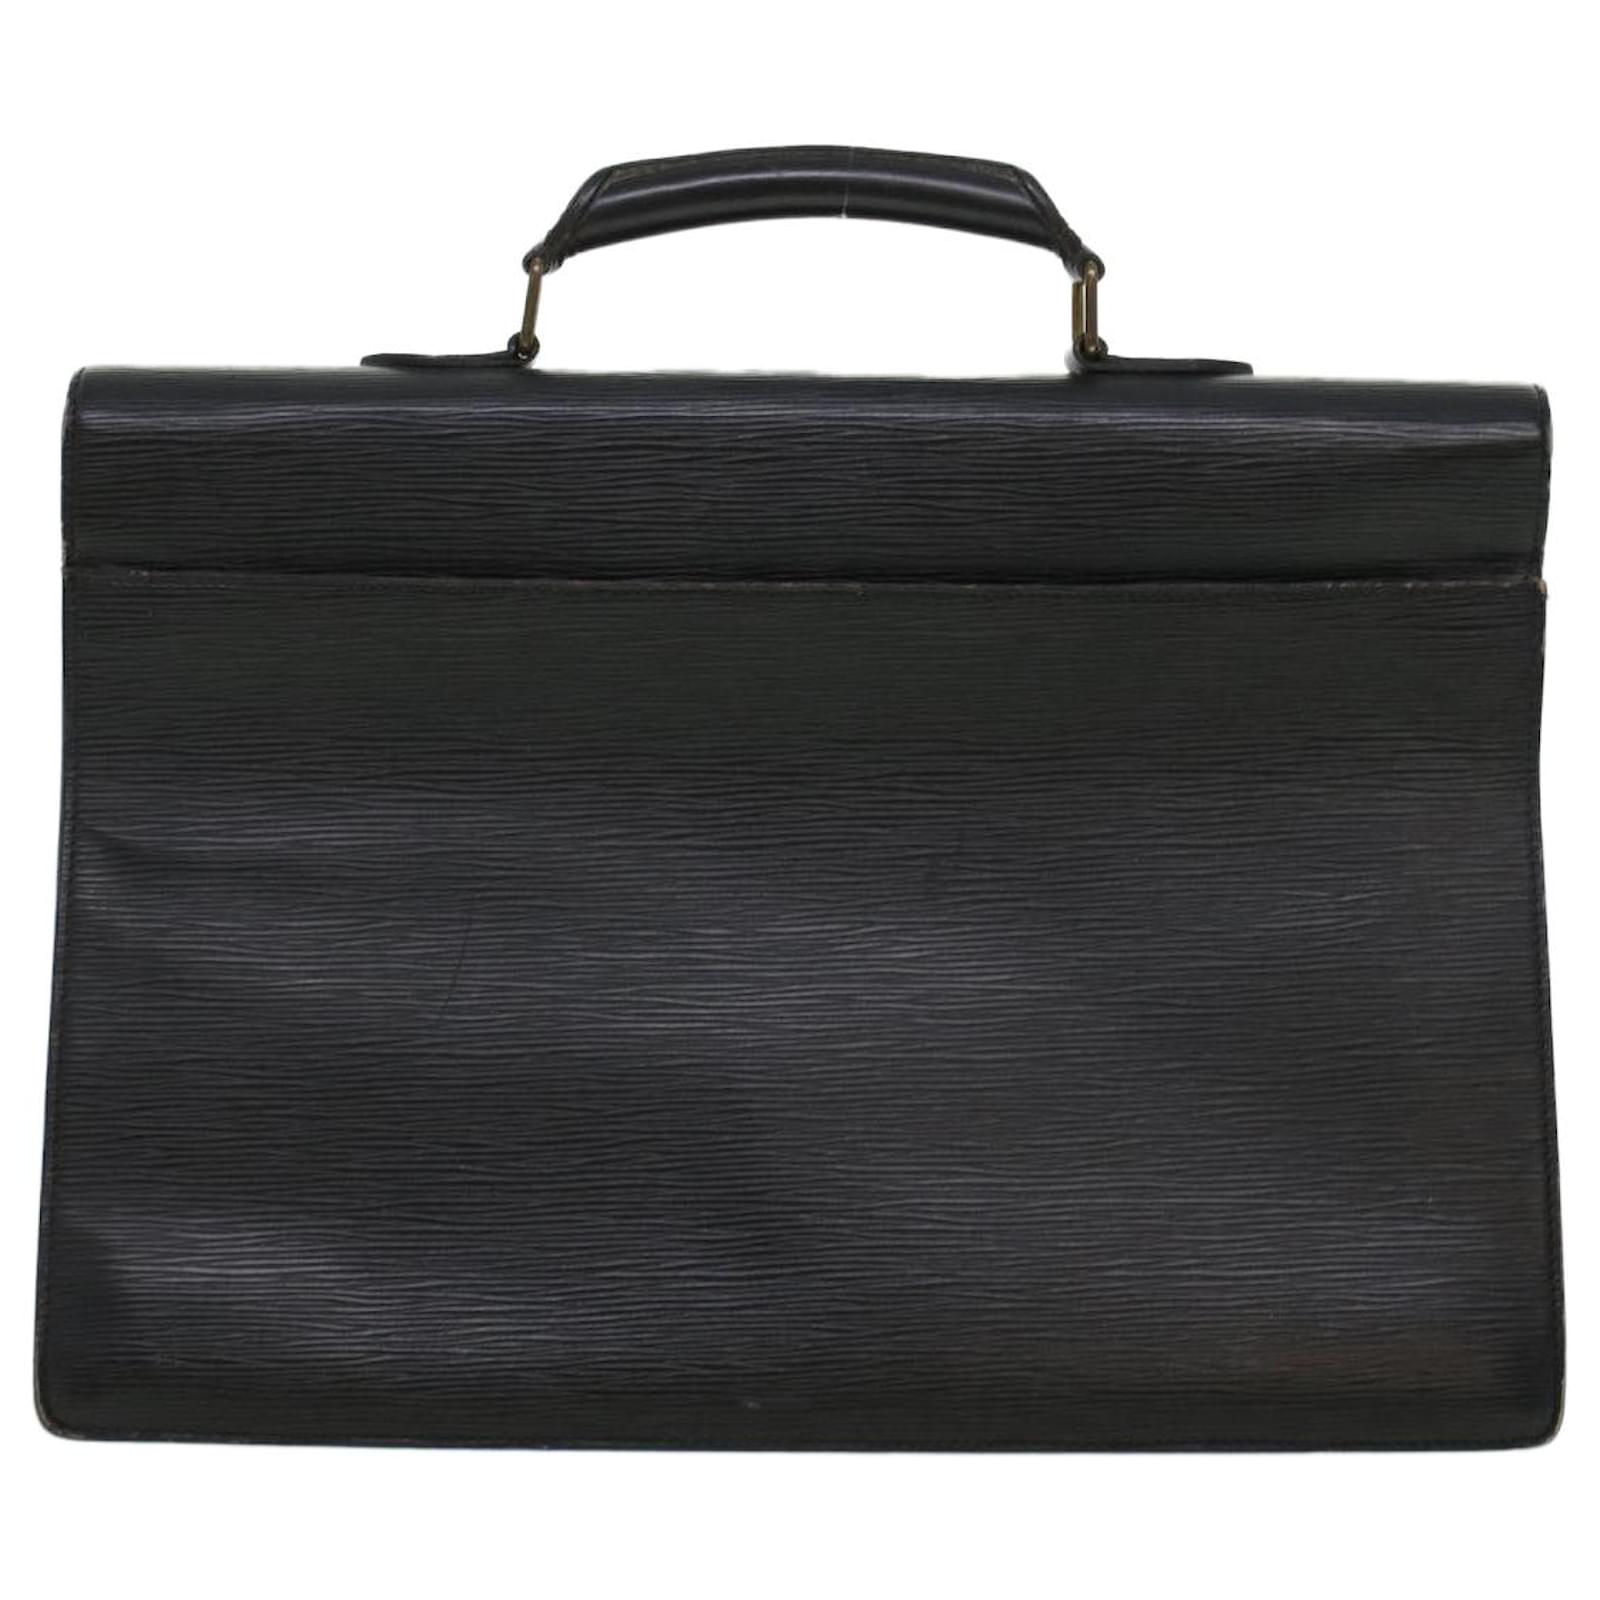 LOUIS VUITTON Epi Serviette Conseiller Business Bag Black M54422